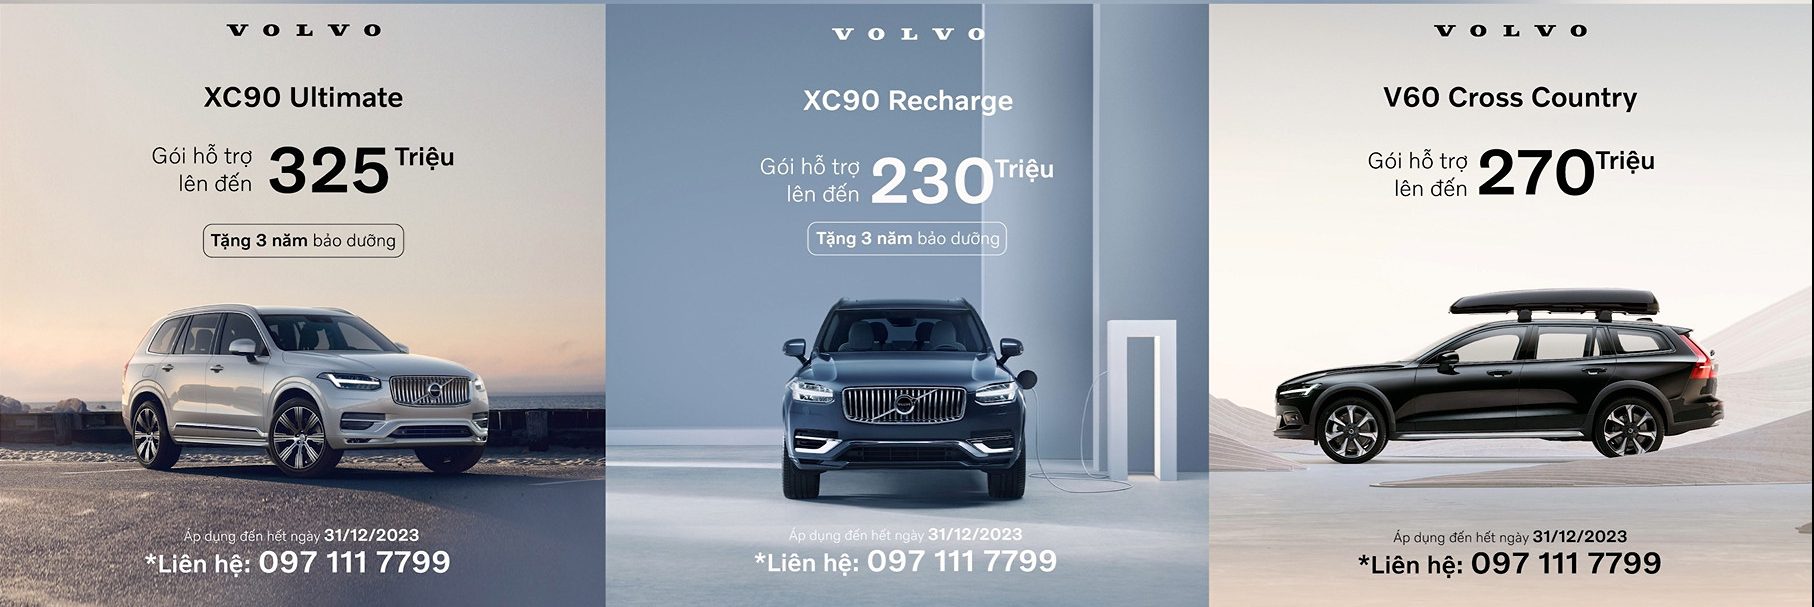 Volvo ưu đãi cực lớn cho các dòng xe trong tháng 12/2023